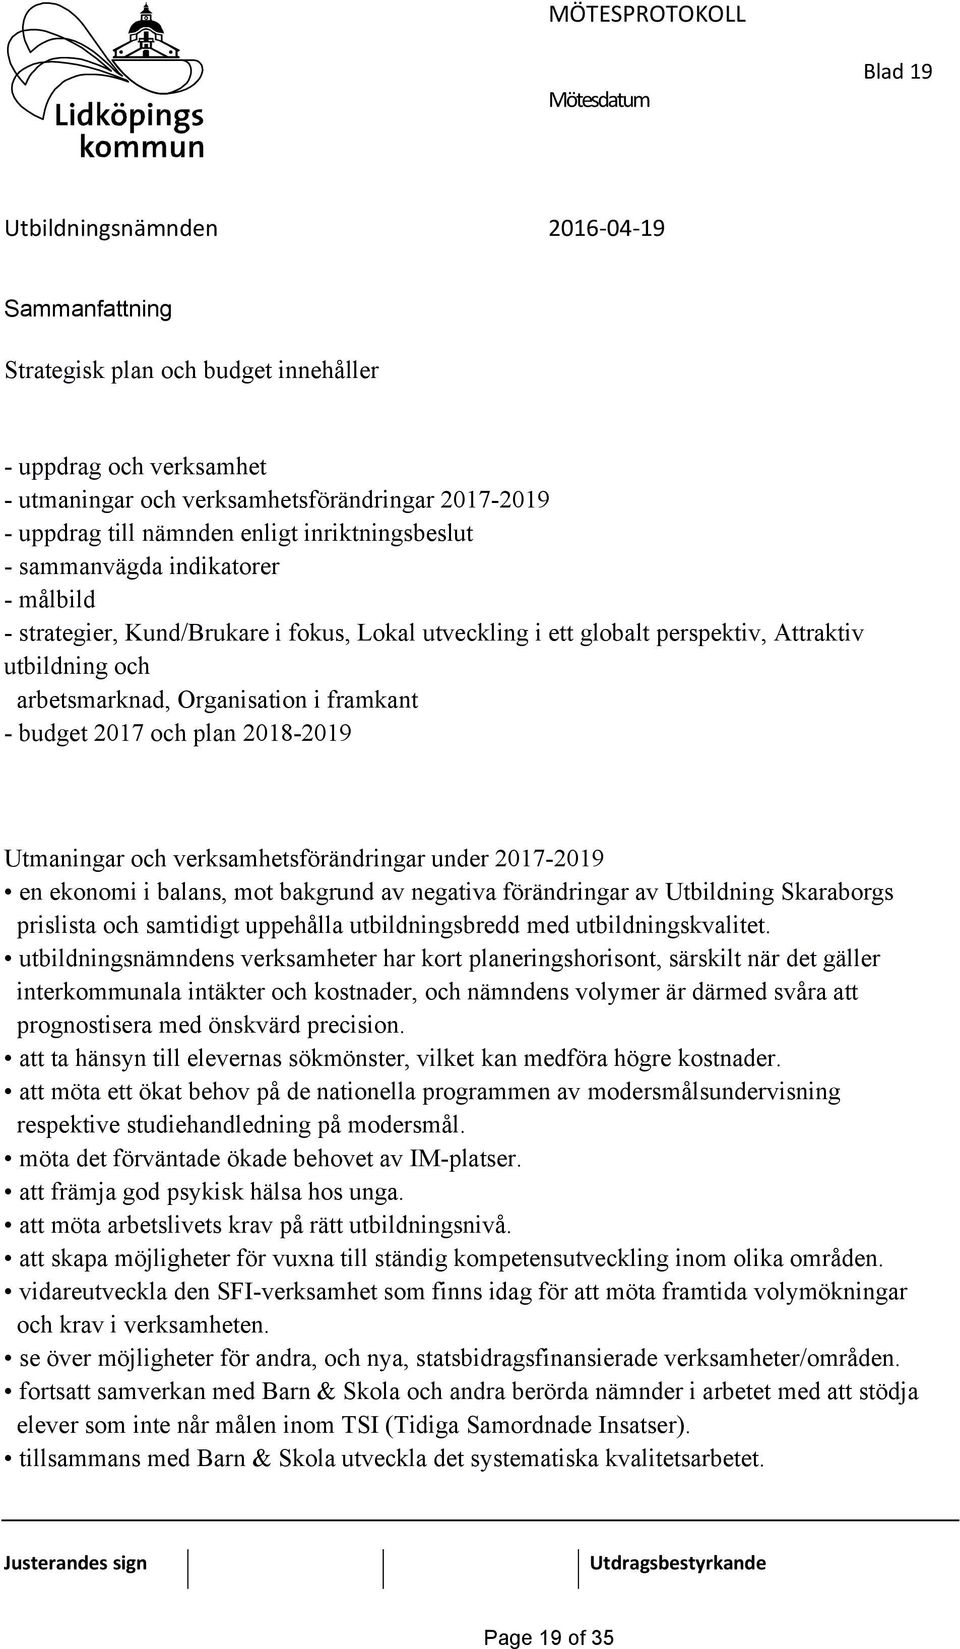 verksamhetsförändringar under 2017-2019 en ekonomi i balans, mot bakgrund av negativa förändringar av Utbildning Skaraborgs prislista och samtidigt uppehålla utbildningsbredd med utbildningskvalitet.